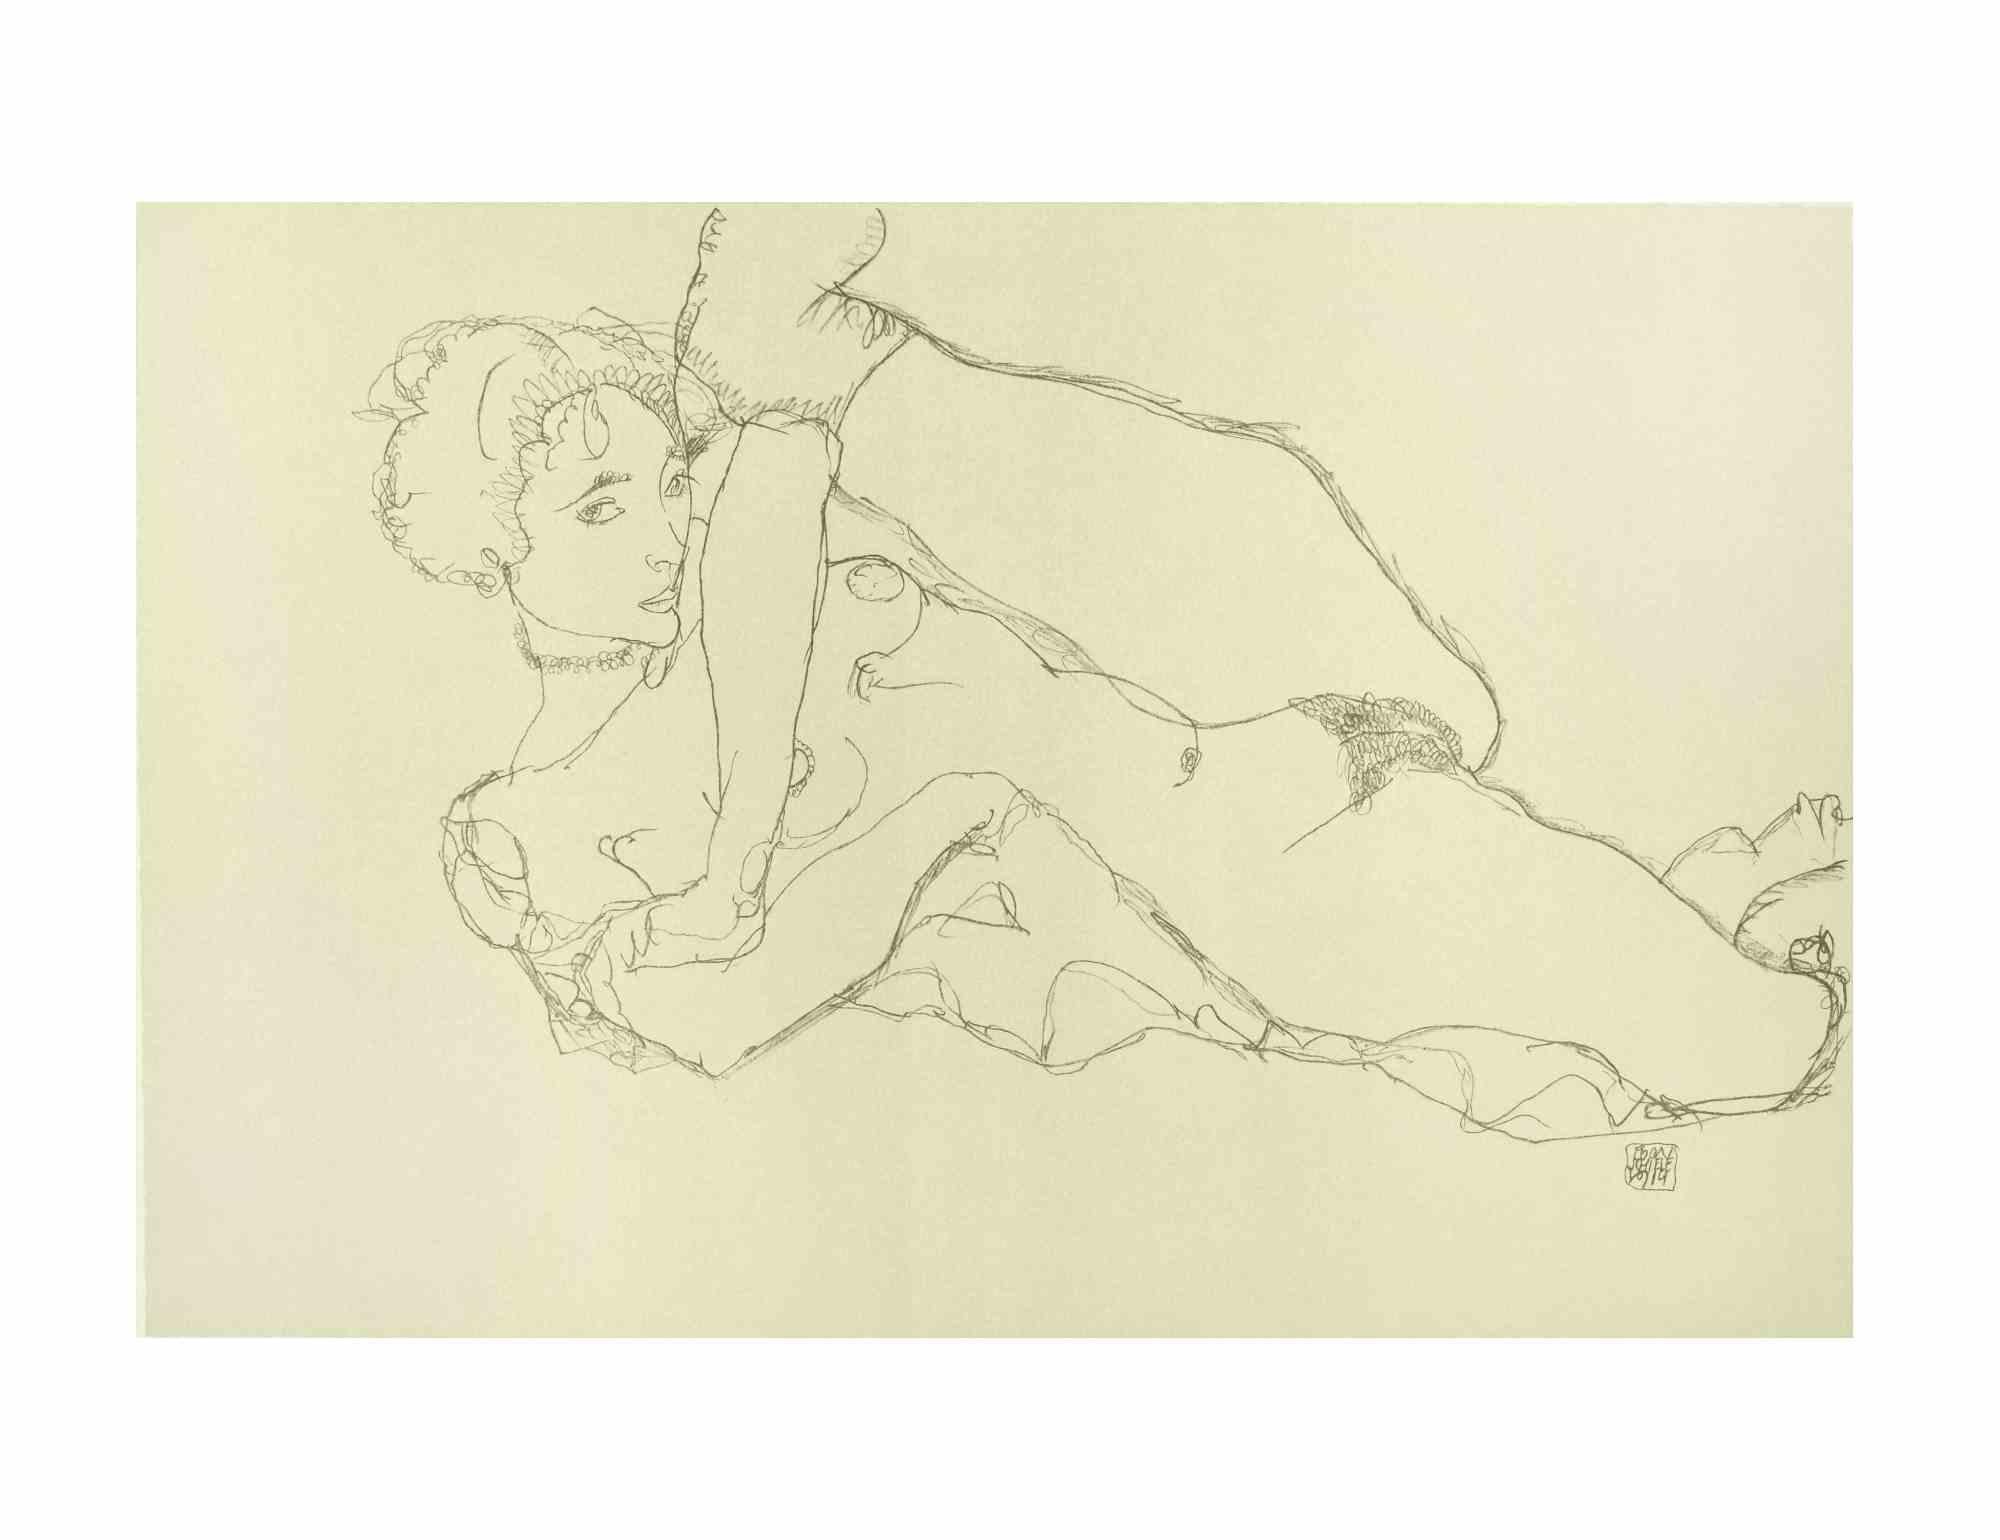 Egon Schiele Portrait Print - Reclining Nude, Left Leg Raised - Lithograph - 2007